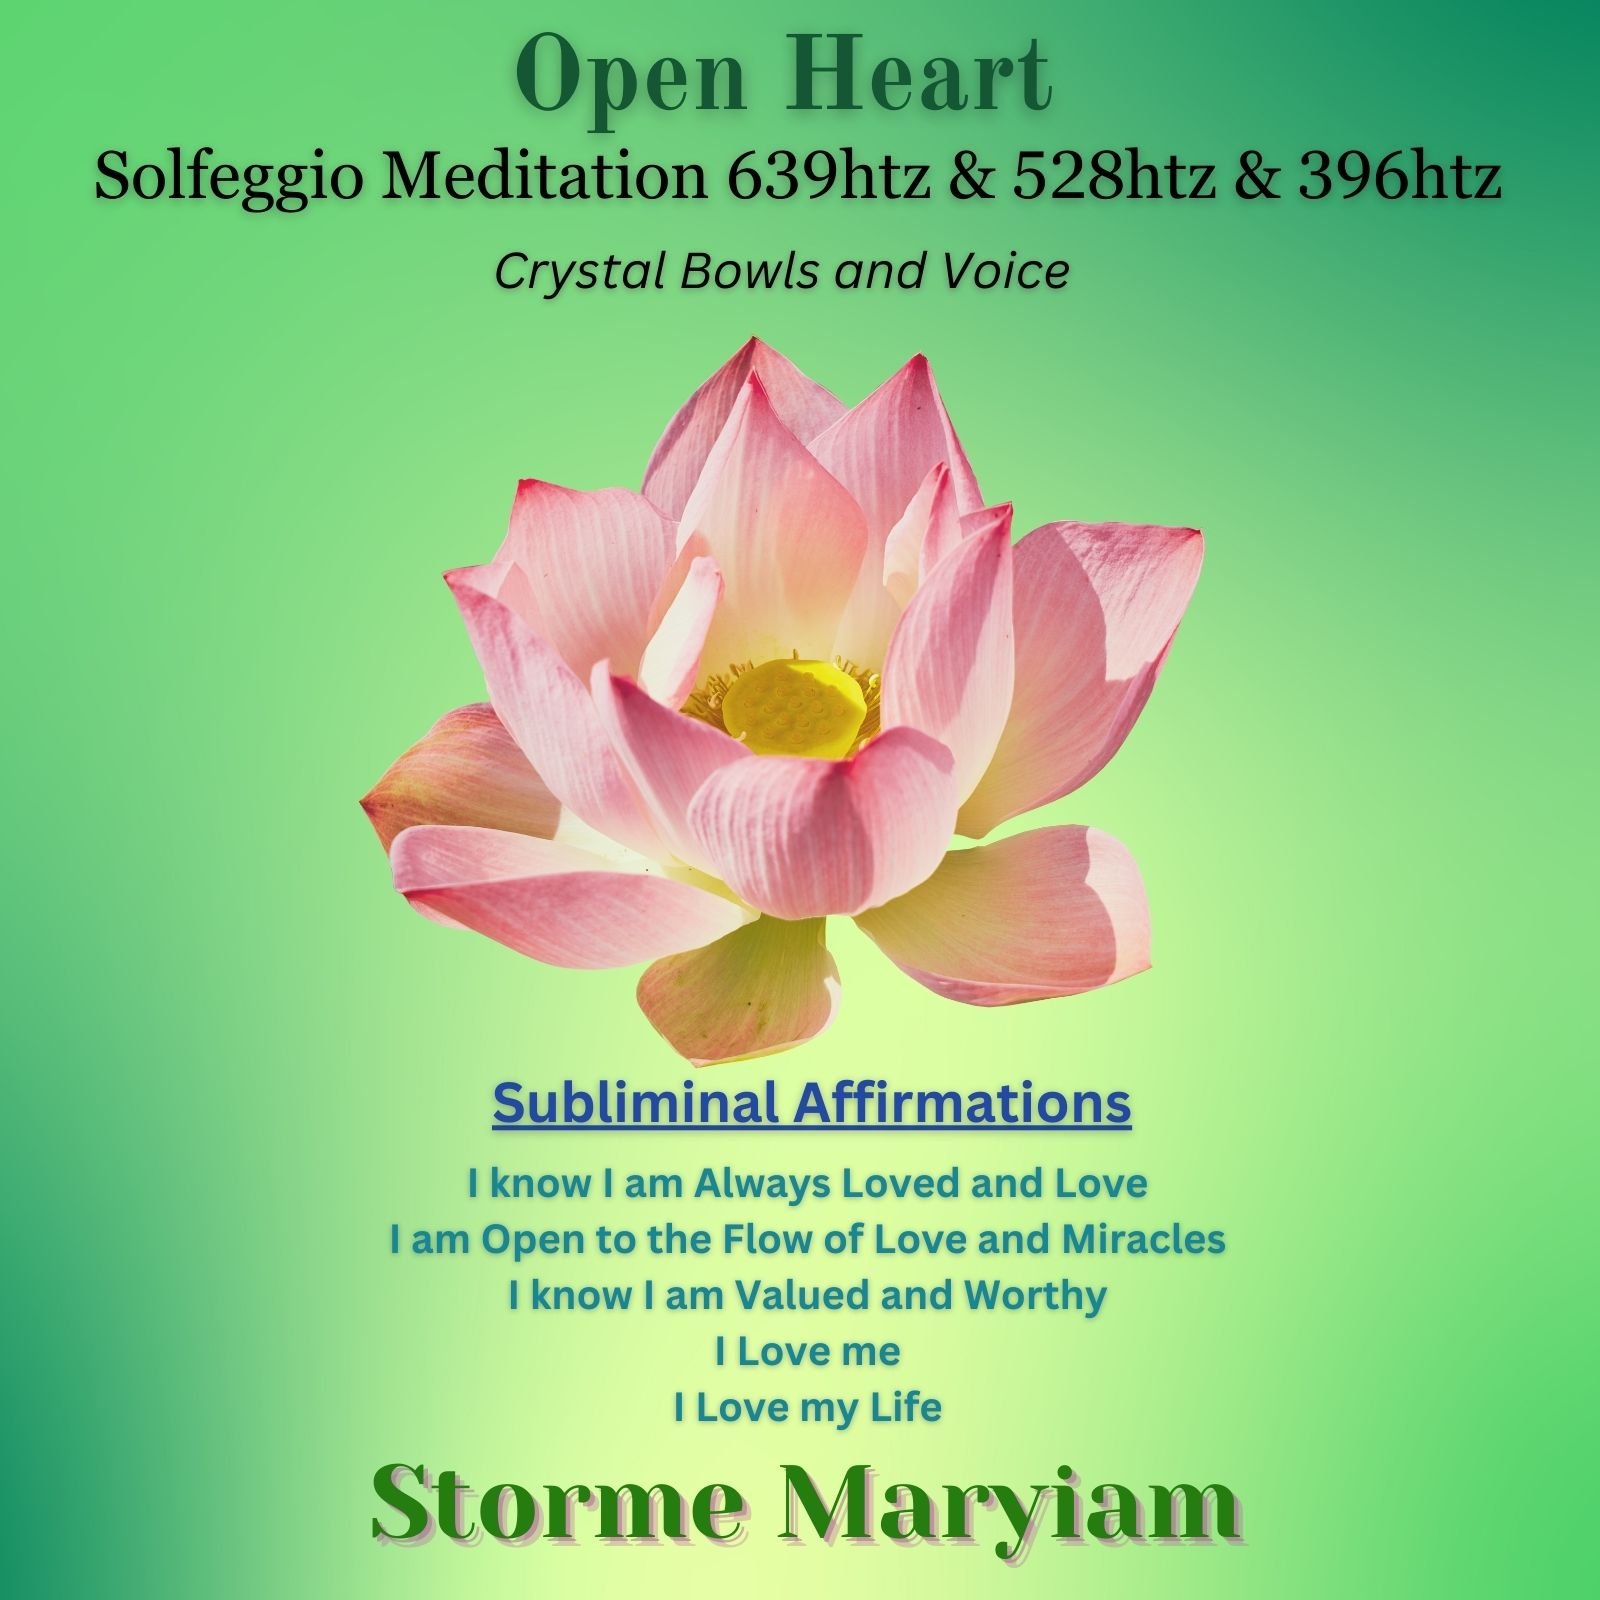 Solfeggio Meditation 639htz & 528htz & 396htz Open Heart